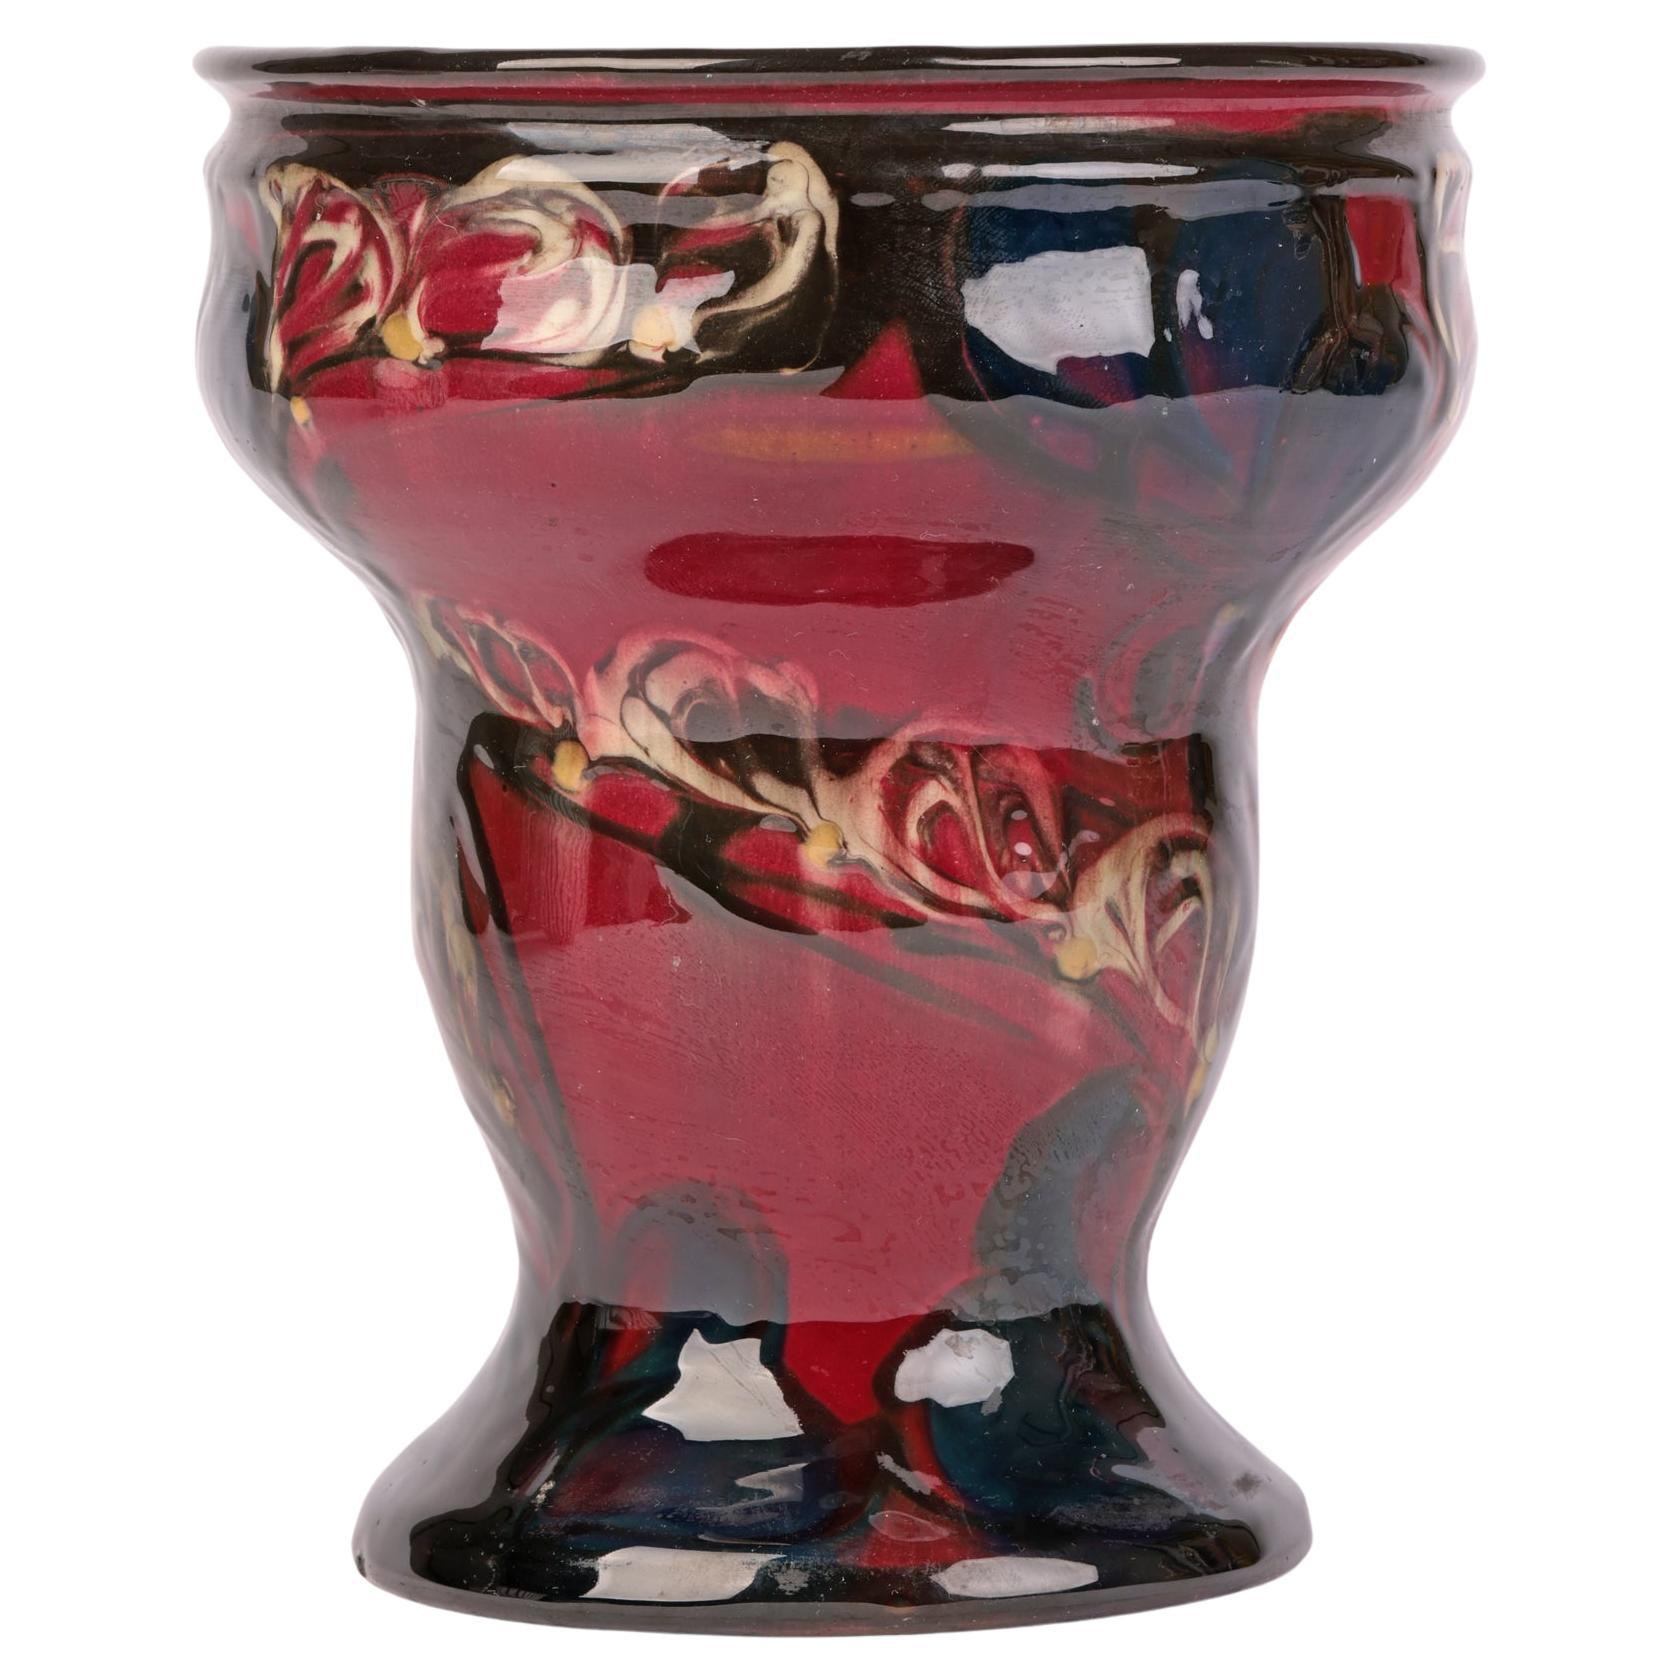 Eiler Londal Danico Skronvirke Art Pottery Abstract Vase For Sale